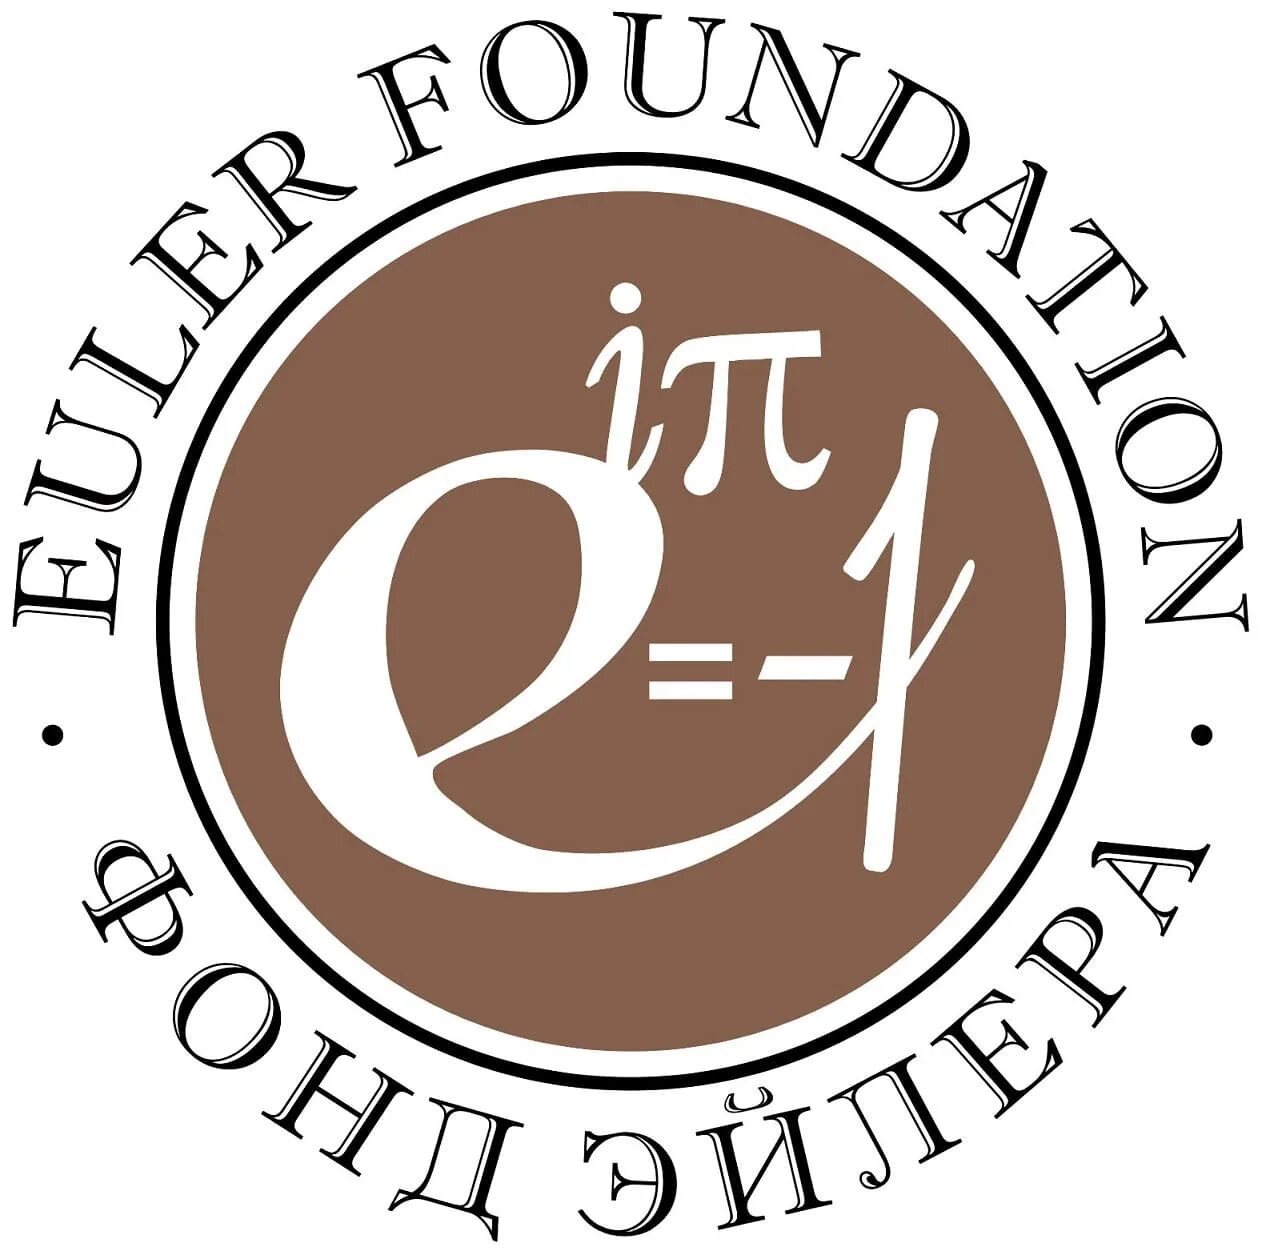 Международный математический институт имени Эйлера. Международный математический институт имени Эйлера лого. W.Euler логотип. Третье тысячелетие формула единства